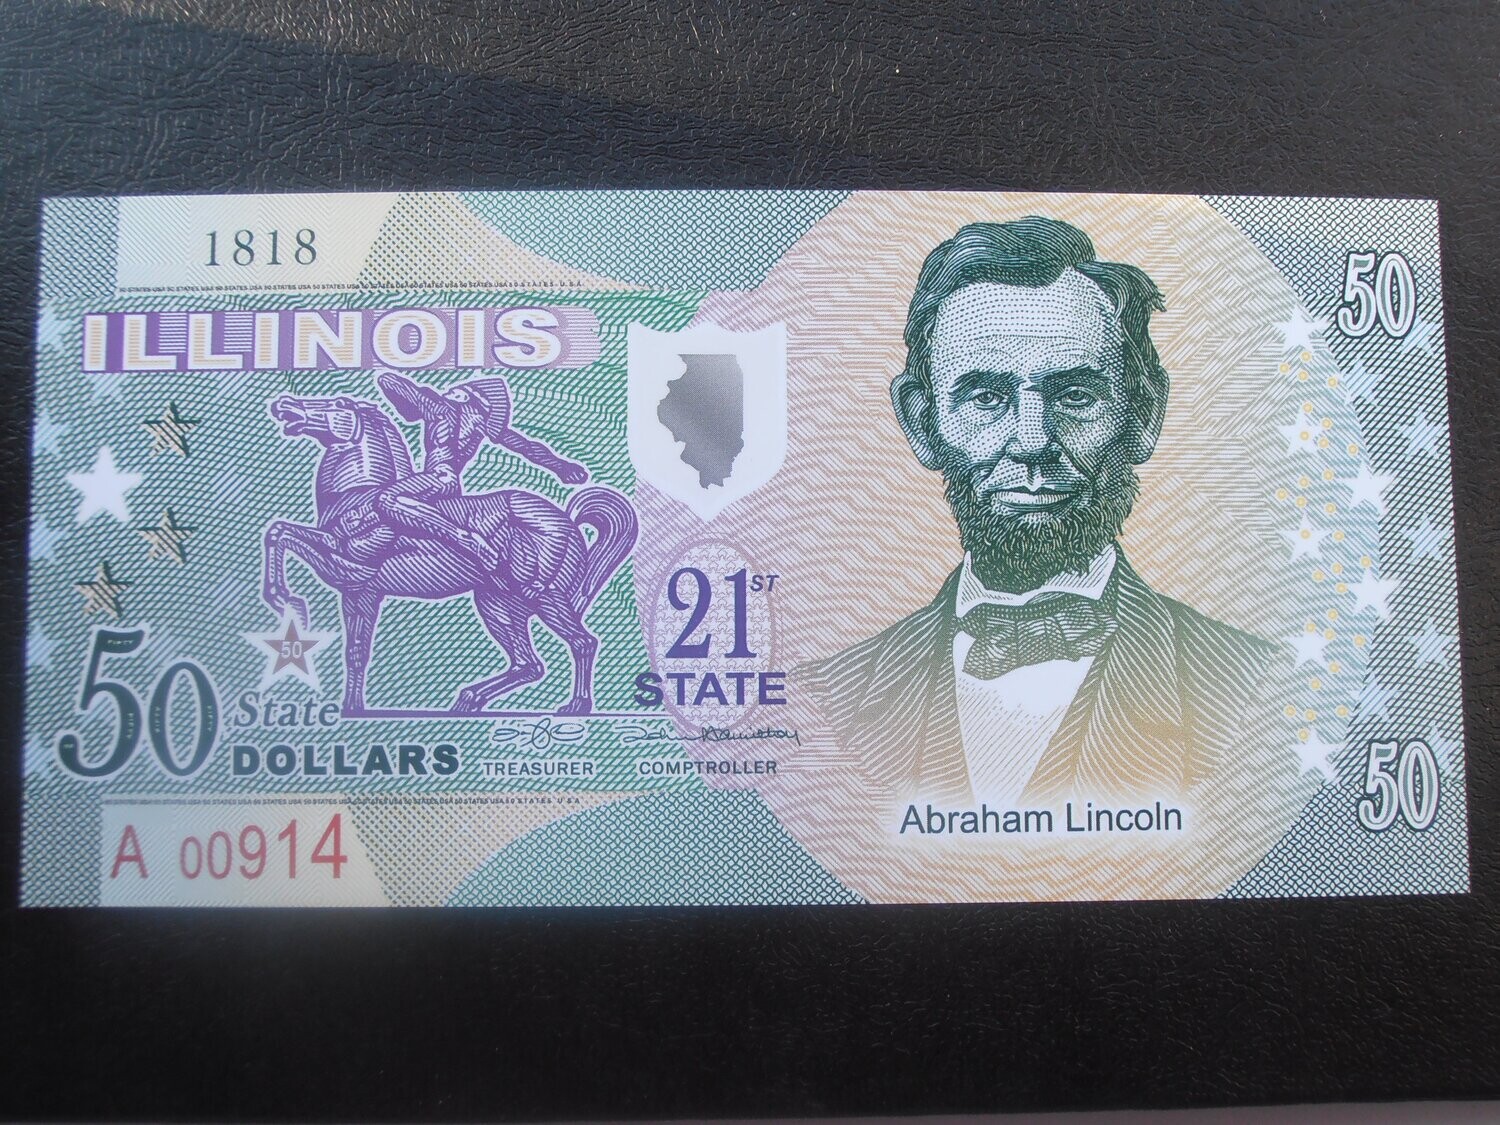 Illinois 50 Dollars (Fantasy)